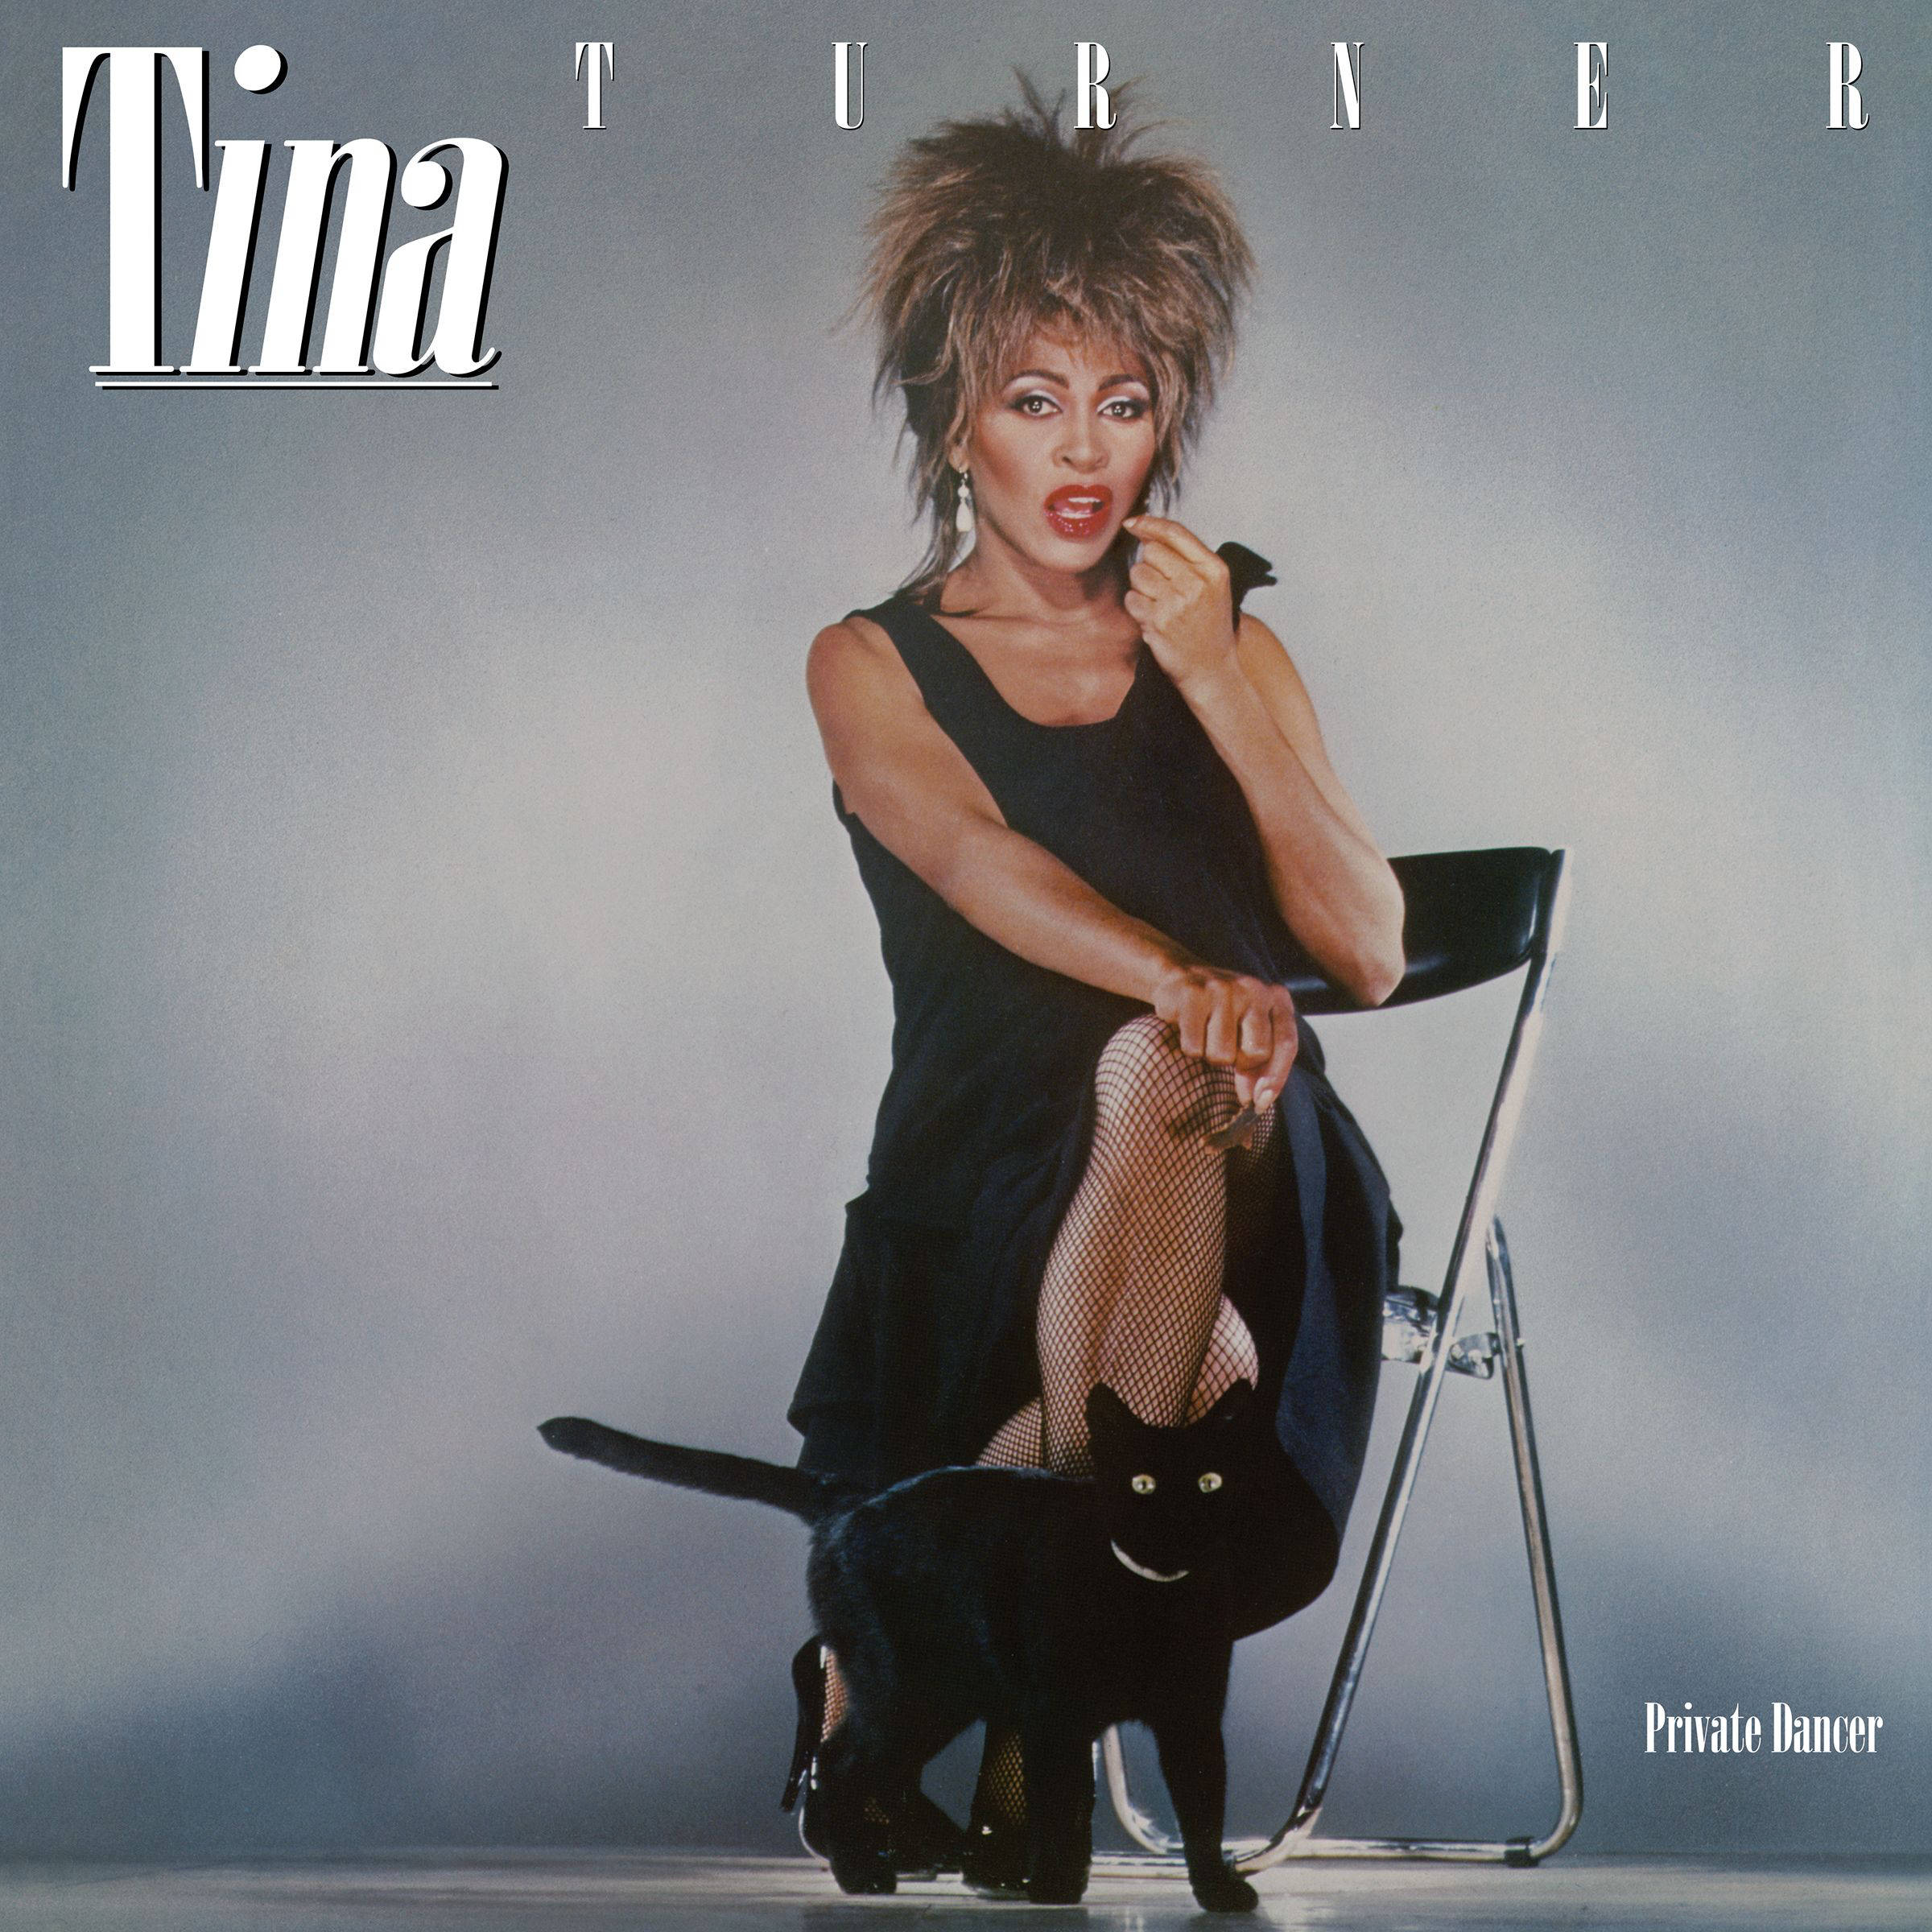 美国歌手蒂娜·特纳因长期生病去世,享年83岁